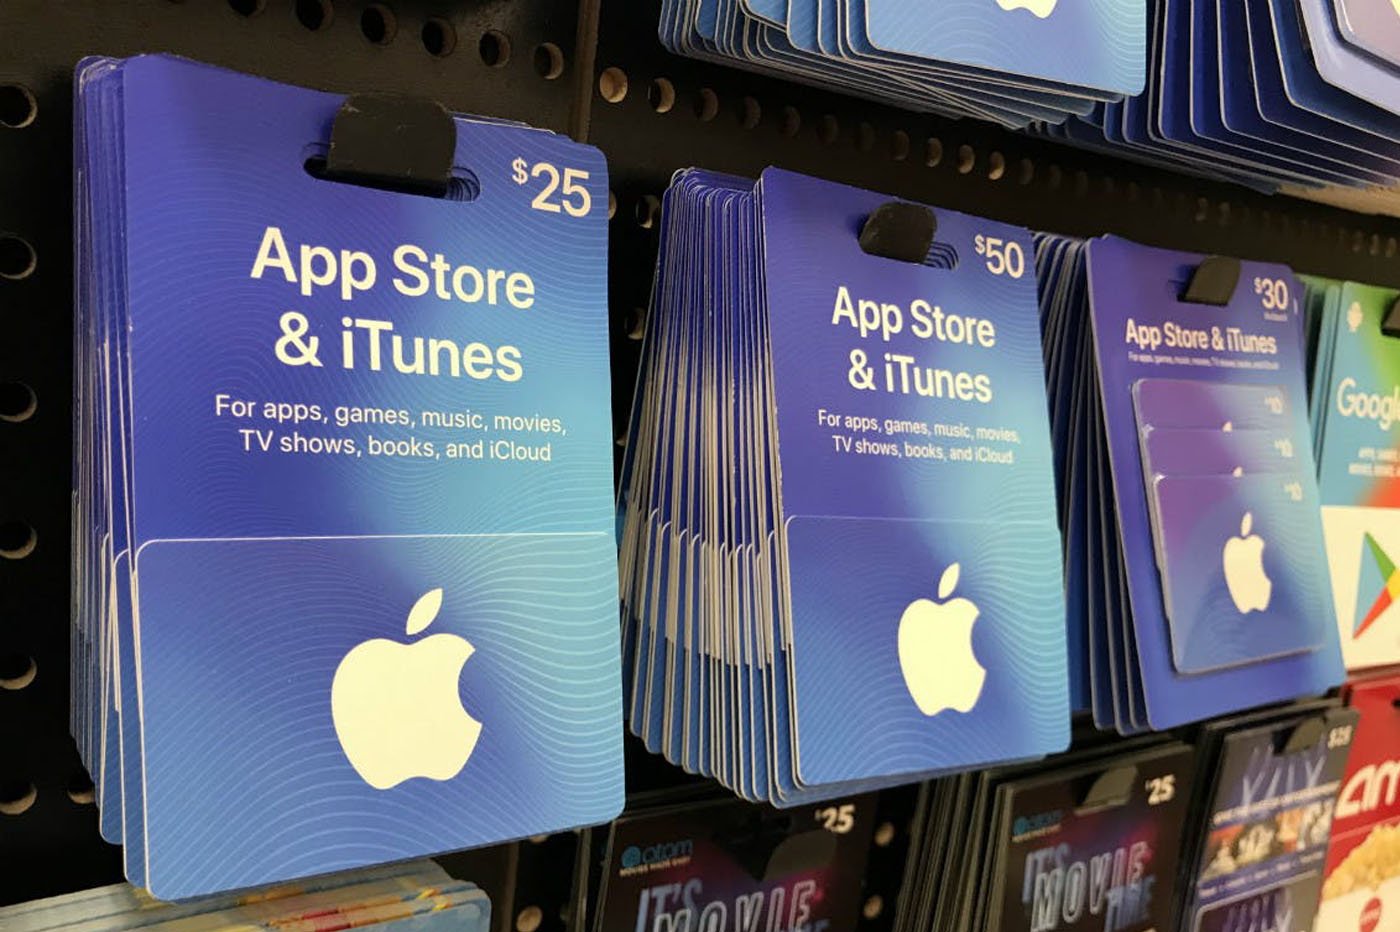 Comment obtenir des cartes-cadeaux et des codes Apple gratuits